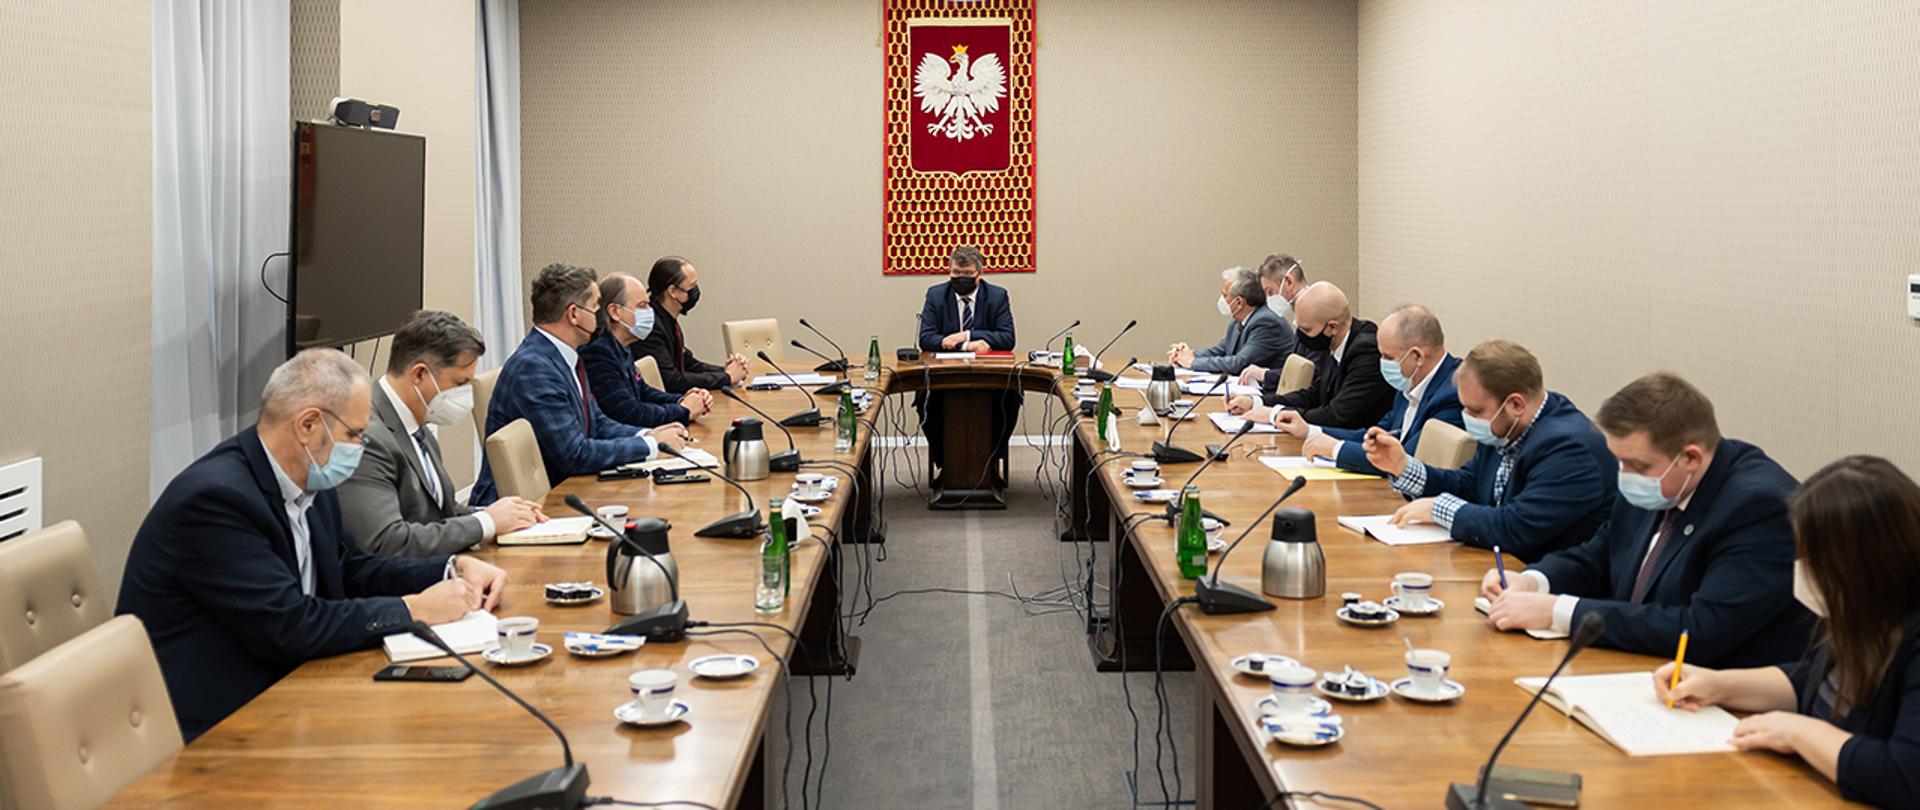 Wiceminister Maciej Wąsik oraz przedstawiciele związków zawodowych służb mundurowych podległych MSWiA podczas rozmowy przy wspólnym stole.